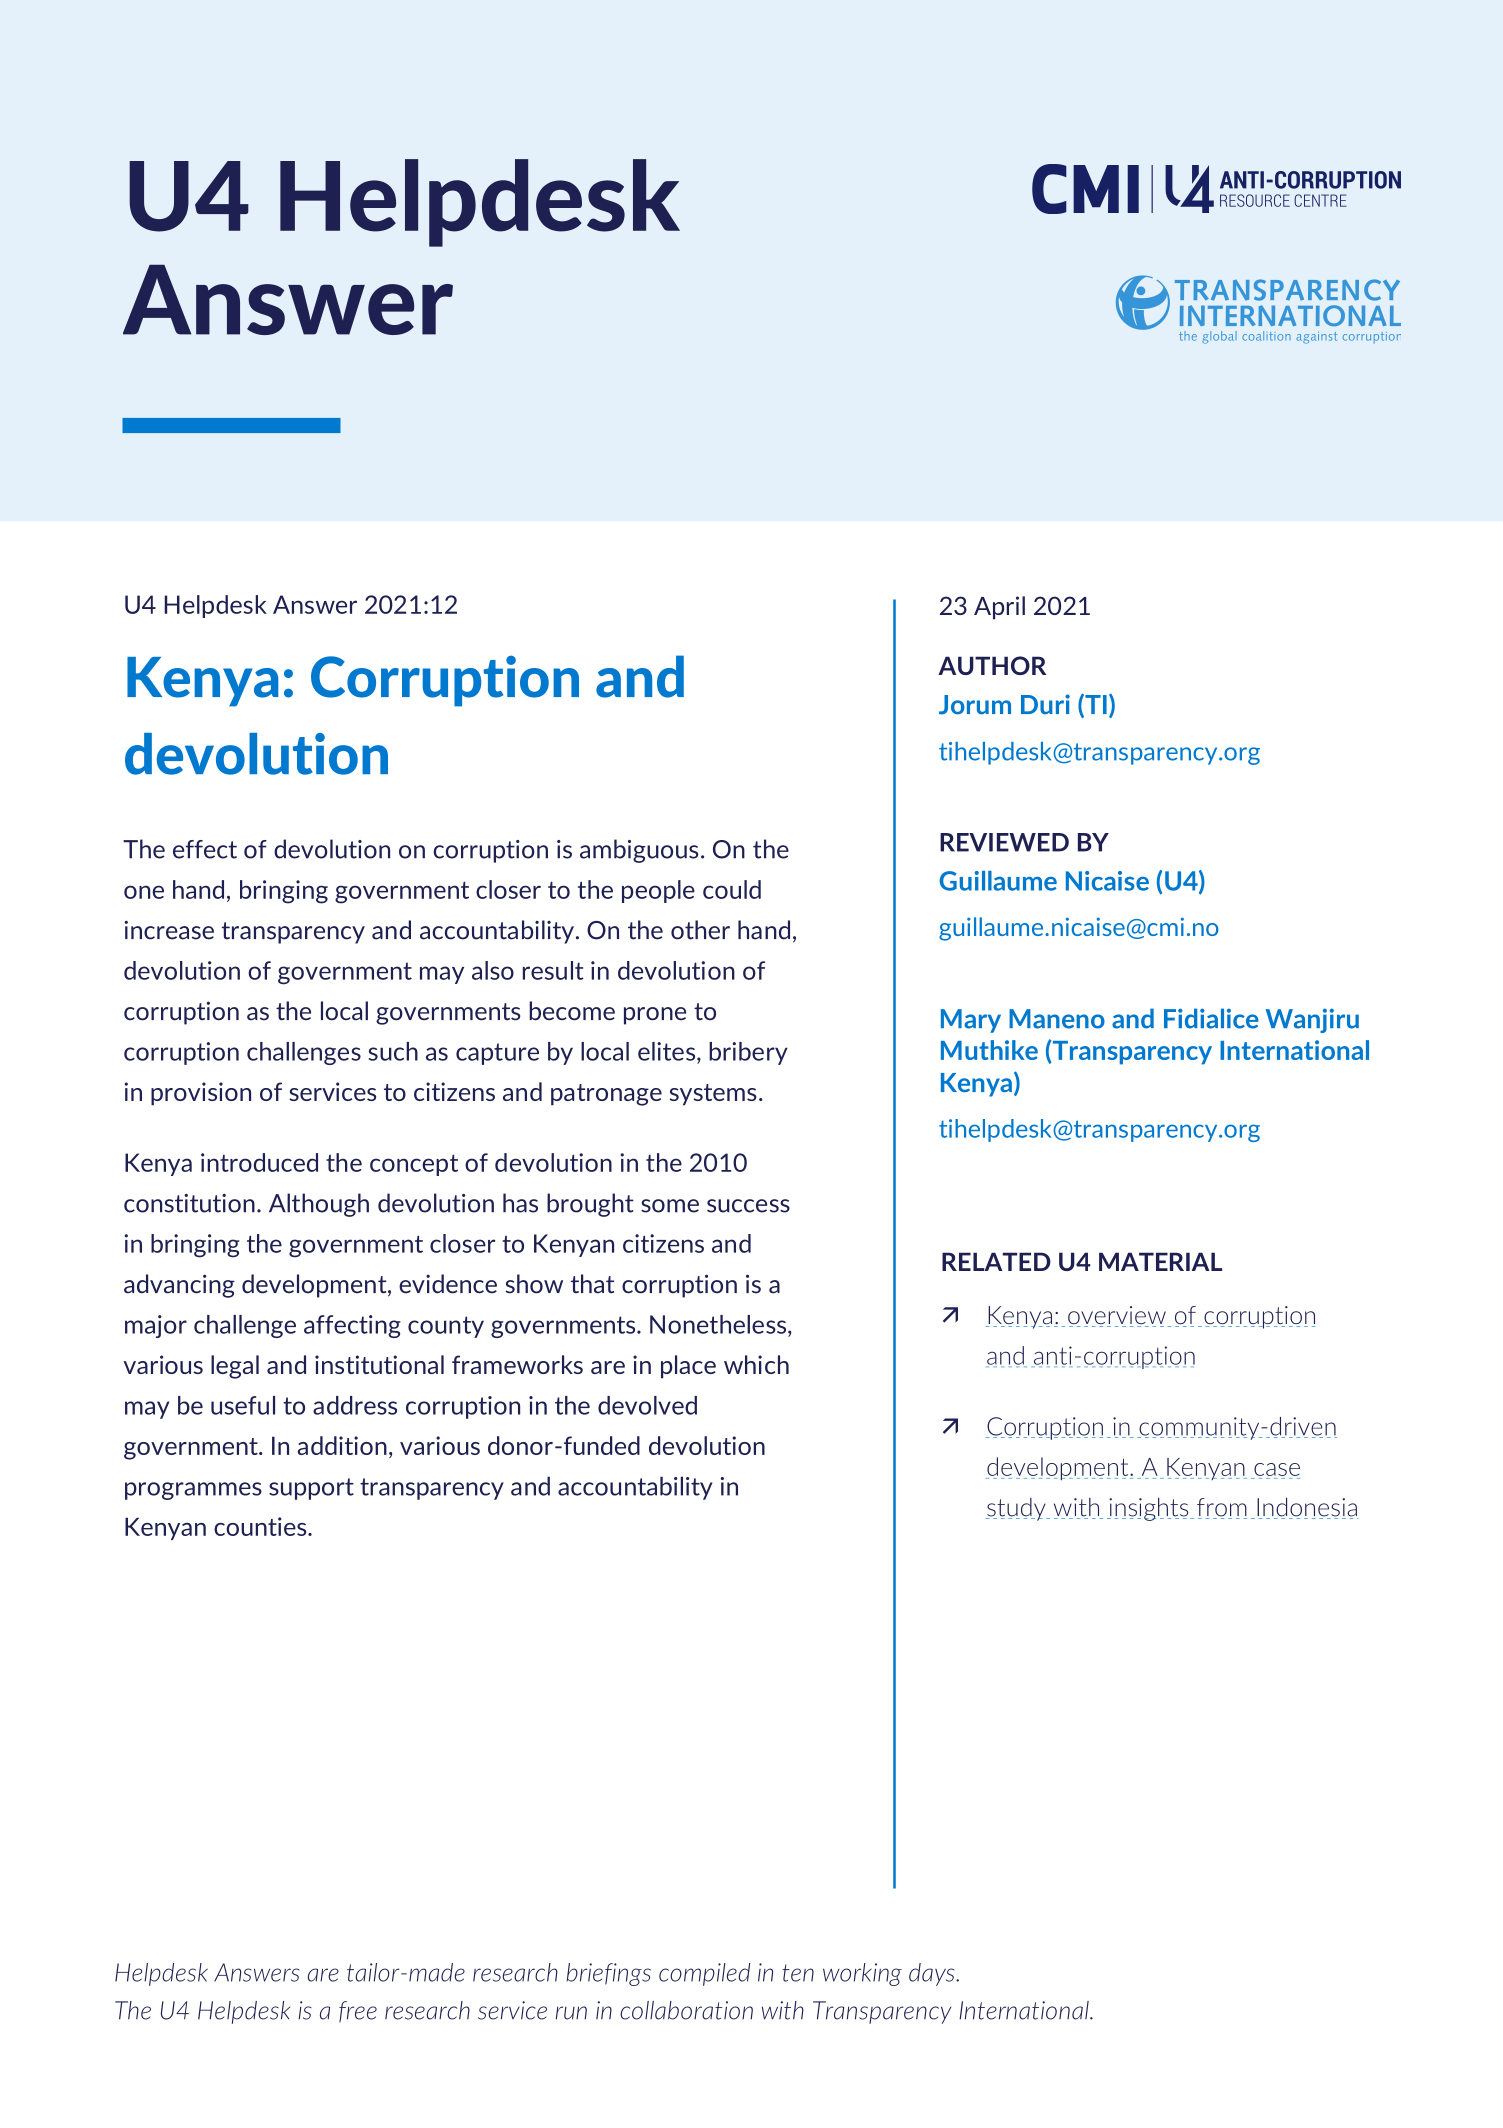 Kenya: Corruption and devolution